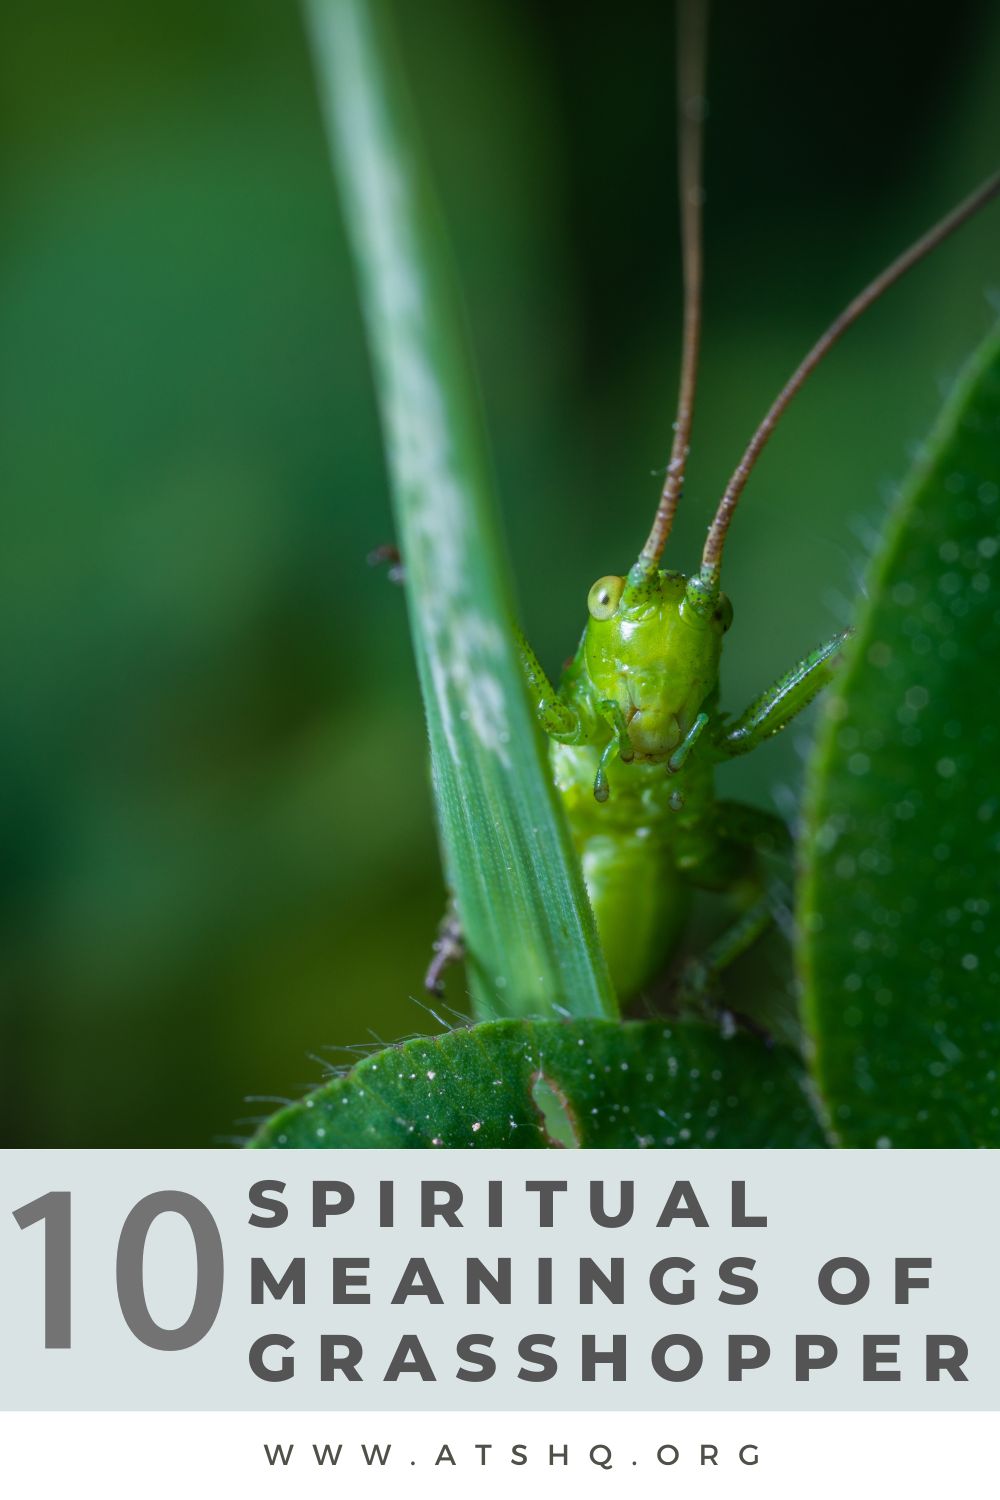 grasshopper meanings